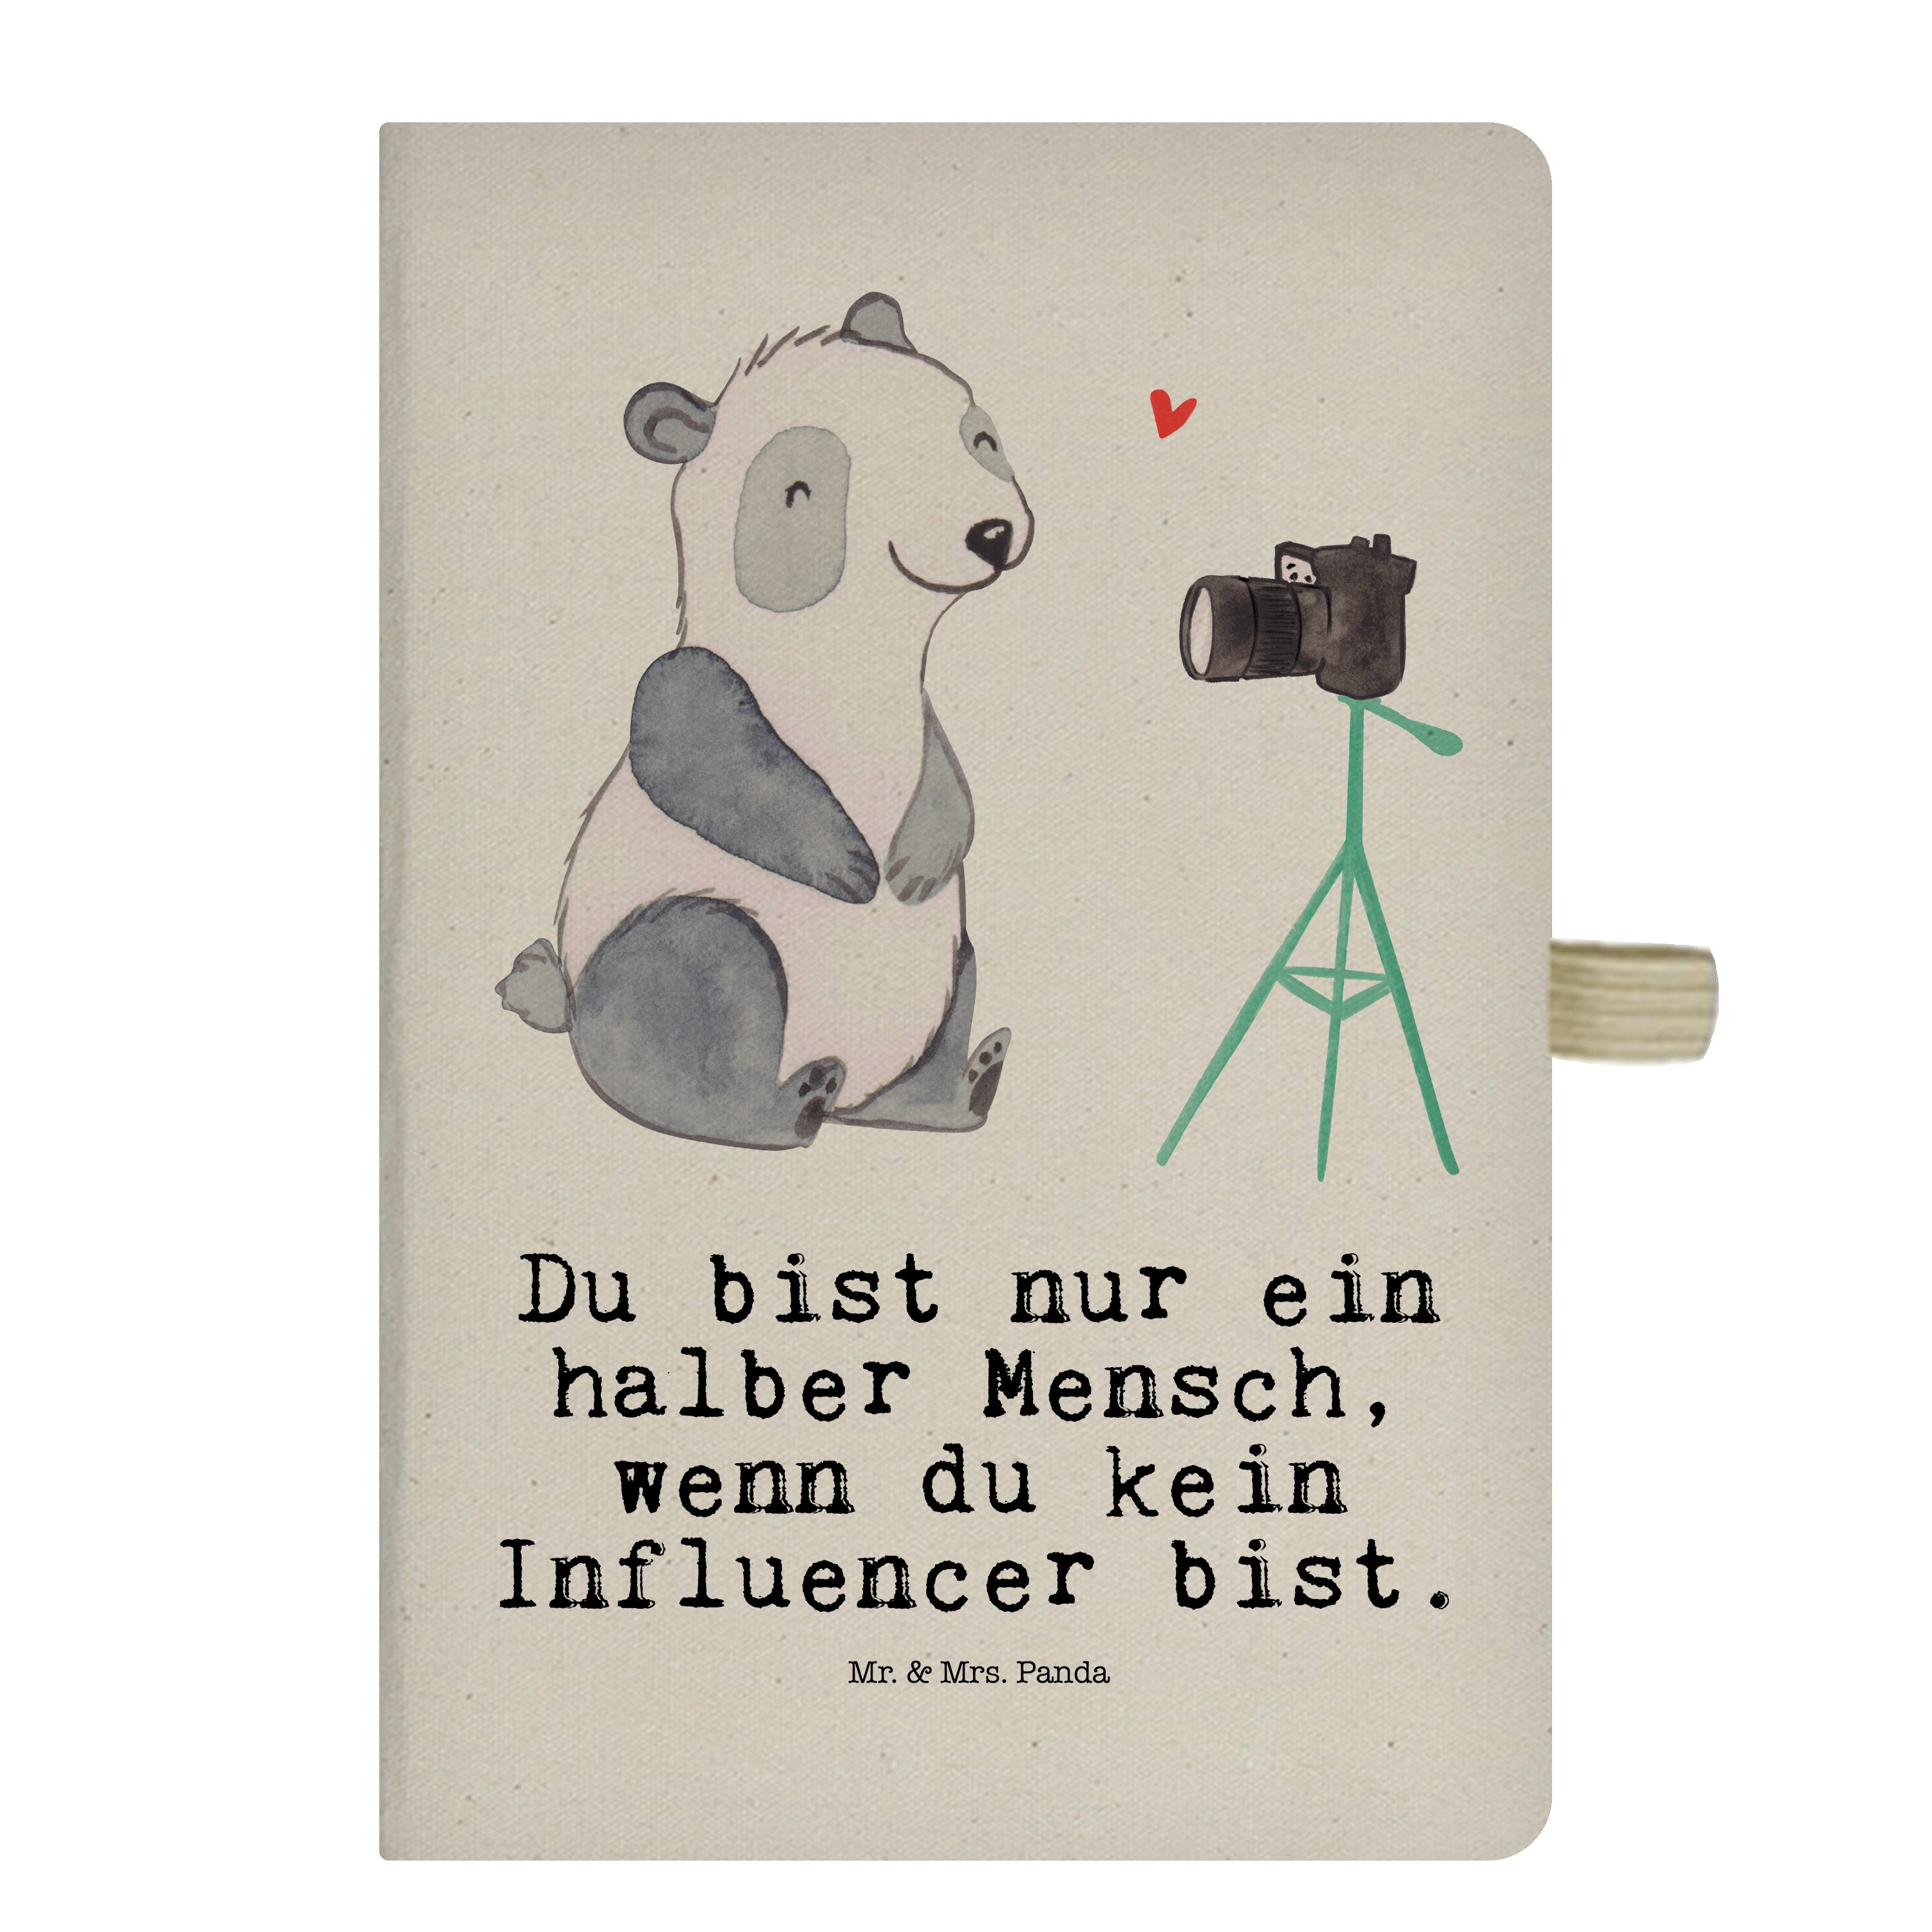 Mr. & Mrs. Panda Notizbuch Influencer mit Herz - Transparent - Geschenk, Danke, Rente, Schreibbu Mr. & Mrs. Panda